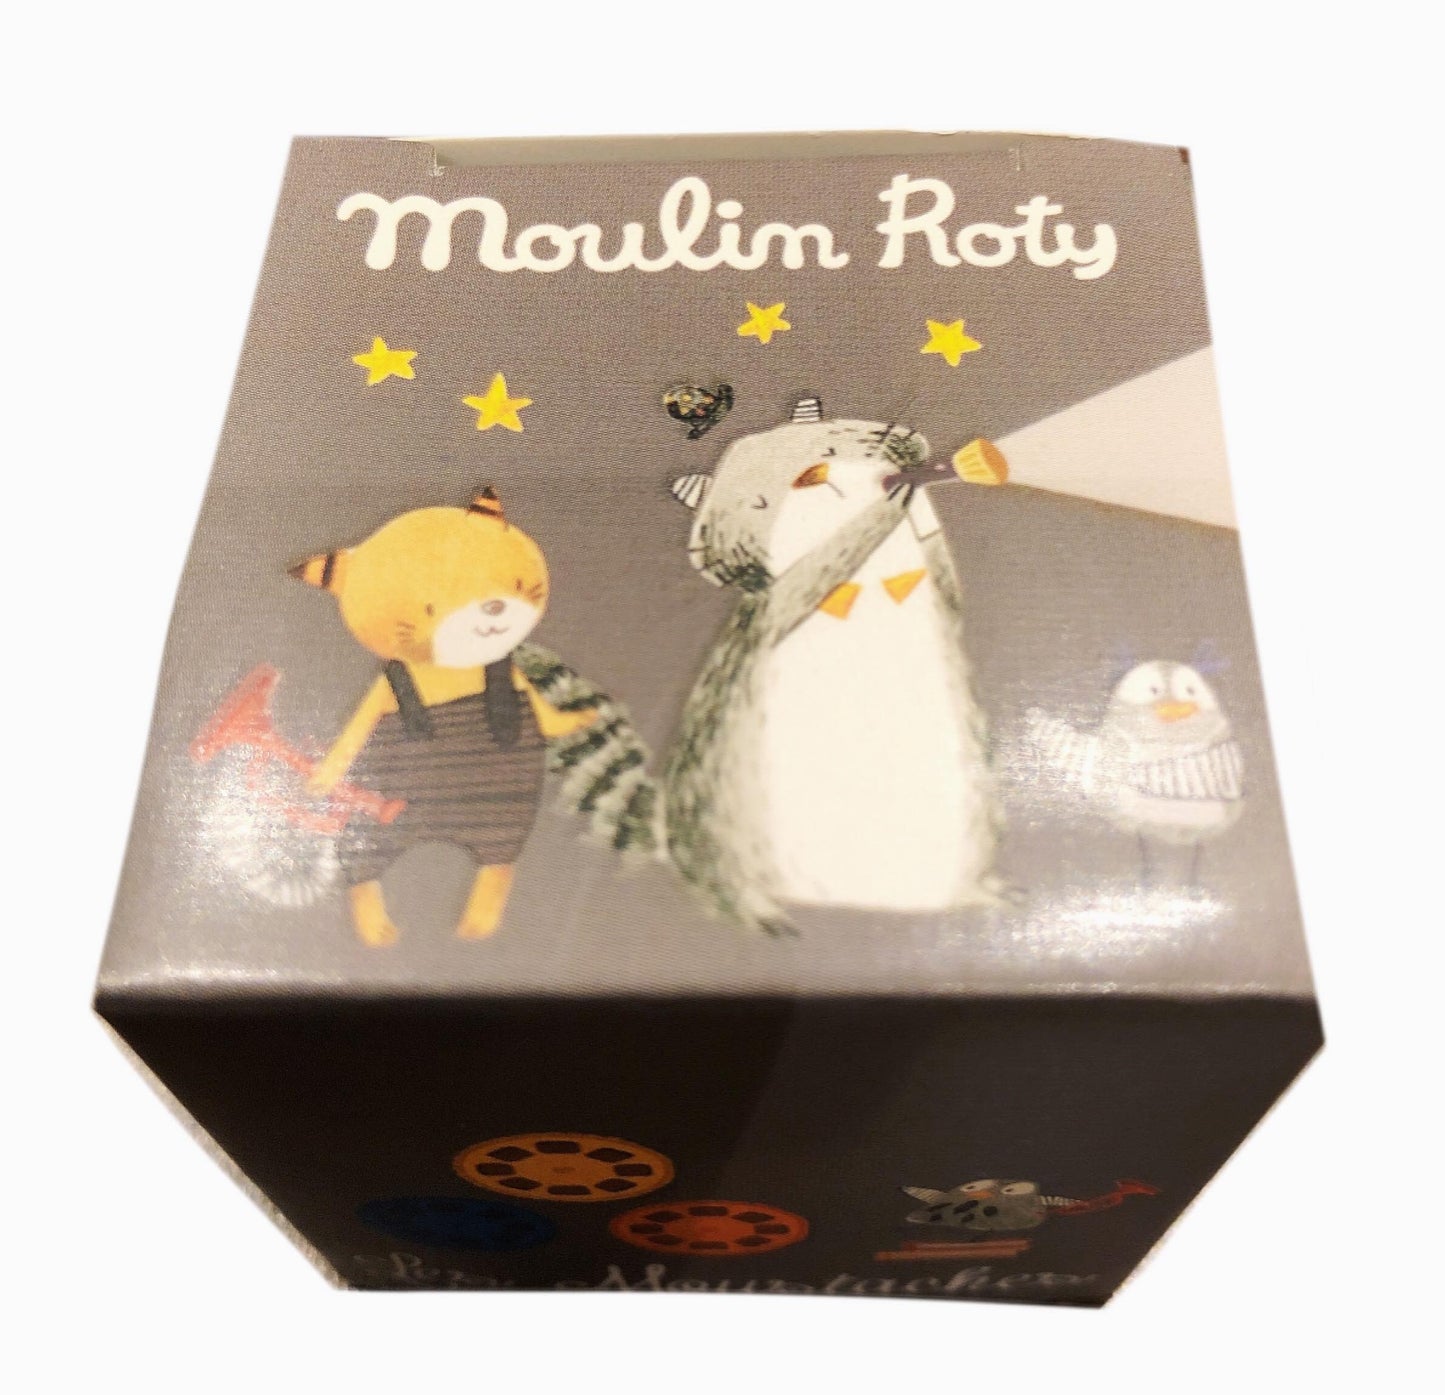 《 Moulin Roty 》故事投影片-貓的舞會